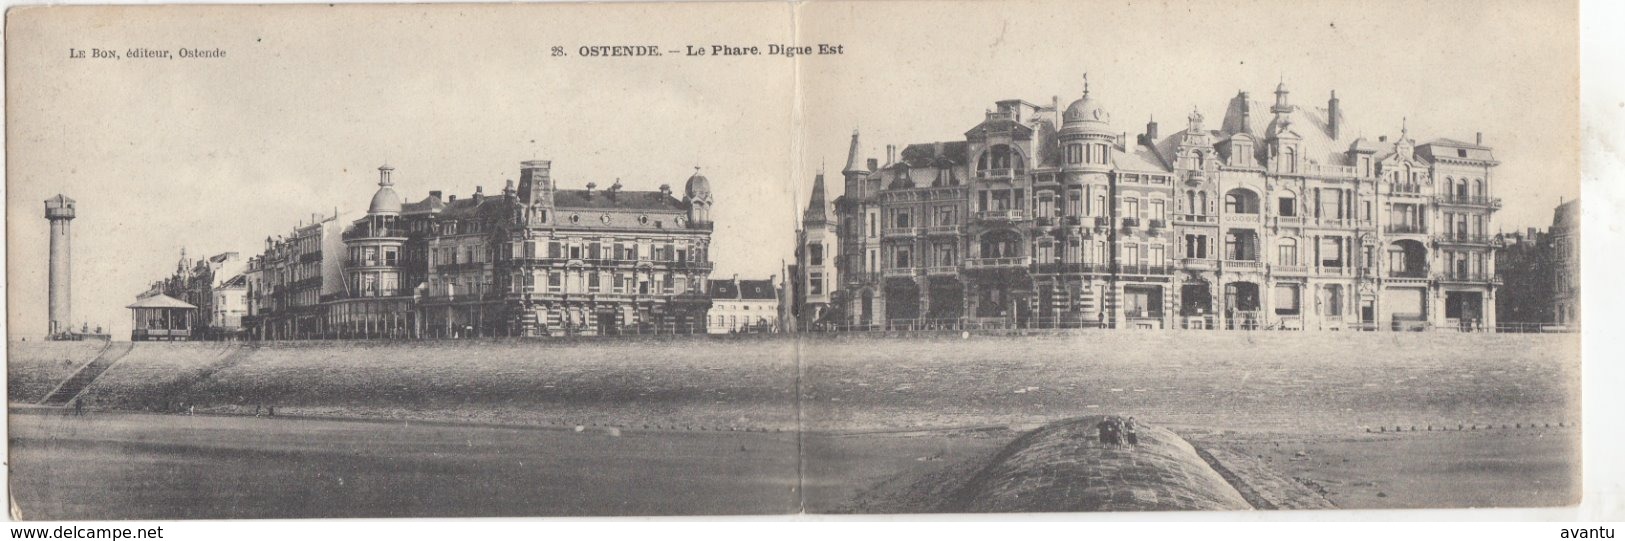 OOSTENDE / PANORAMAKAART / VUURTOREN EN ZEEDIJK  1908 - Oostende